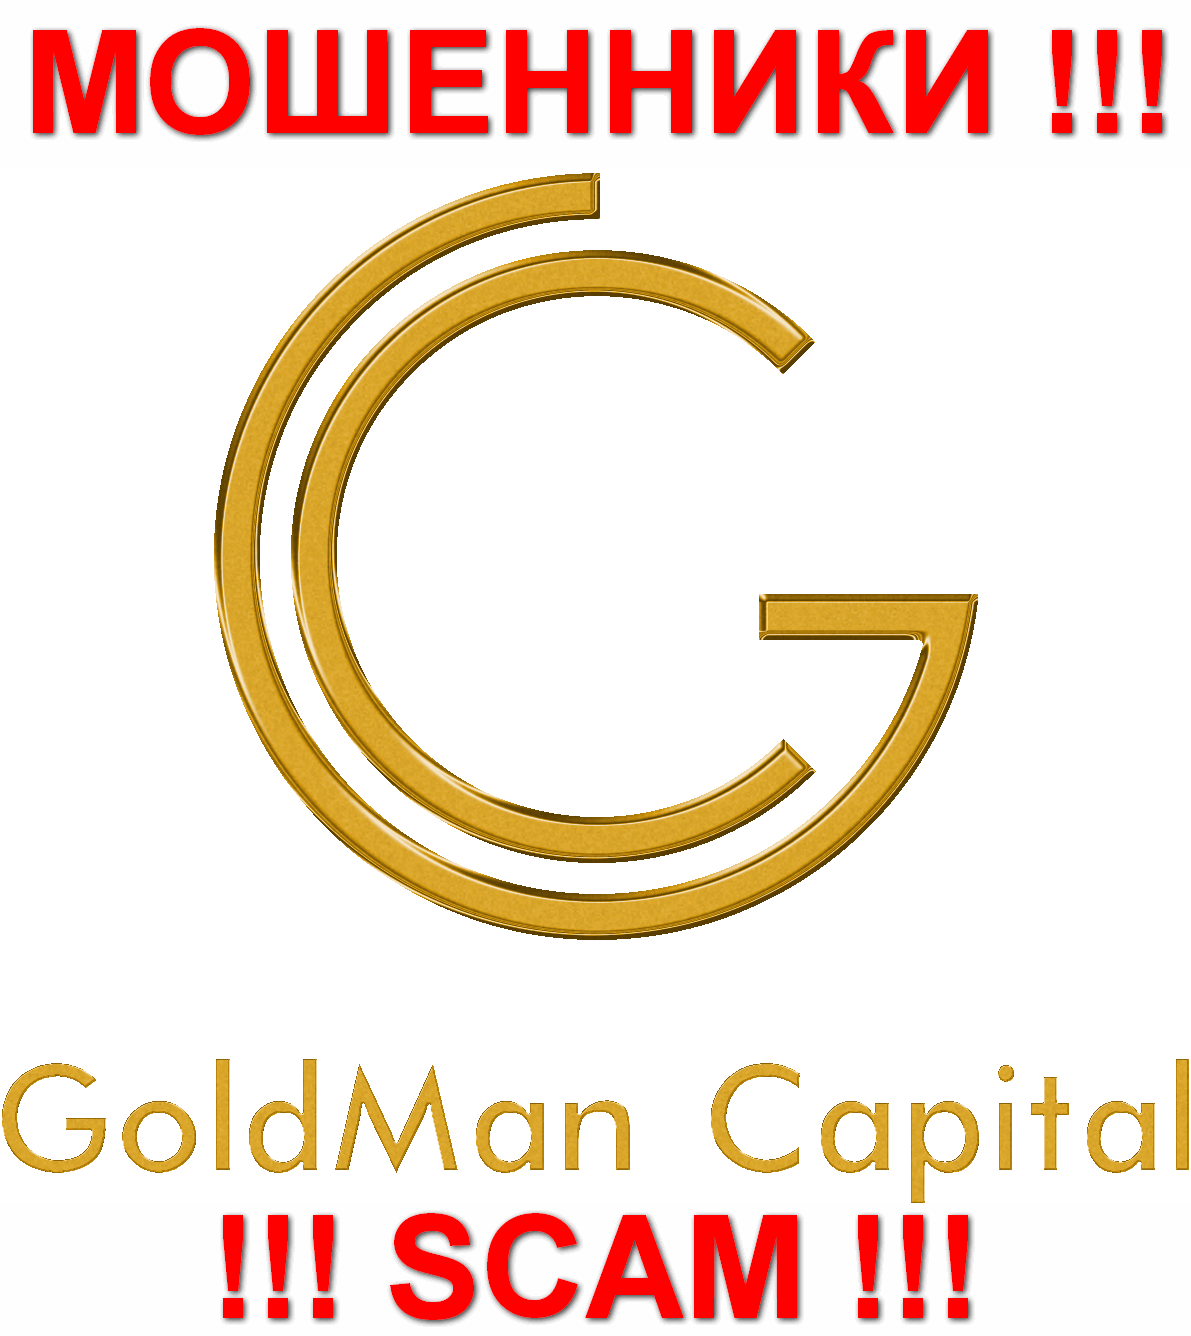 GoldmanCapital Ru - МОШЕННИКИ !!! СКАМ !!!